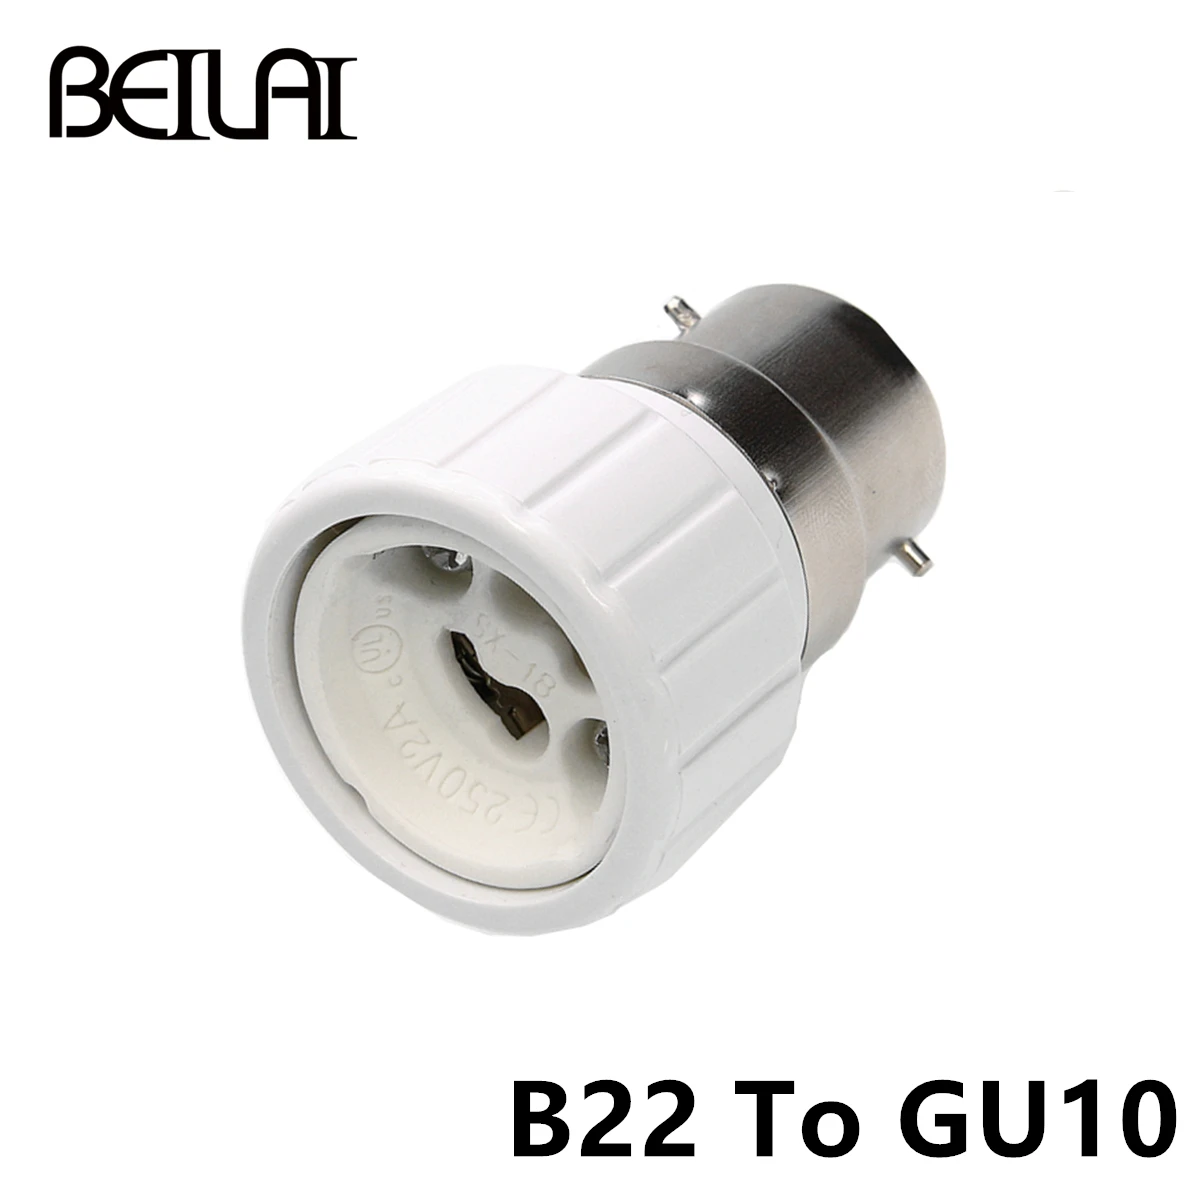 1x конвертер E27 E14 MR16 GU10 G9 светодиодный адаптер для ламп высокое качество материал огнеупорный разъем адаптер держатель лампы